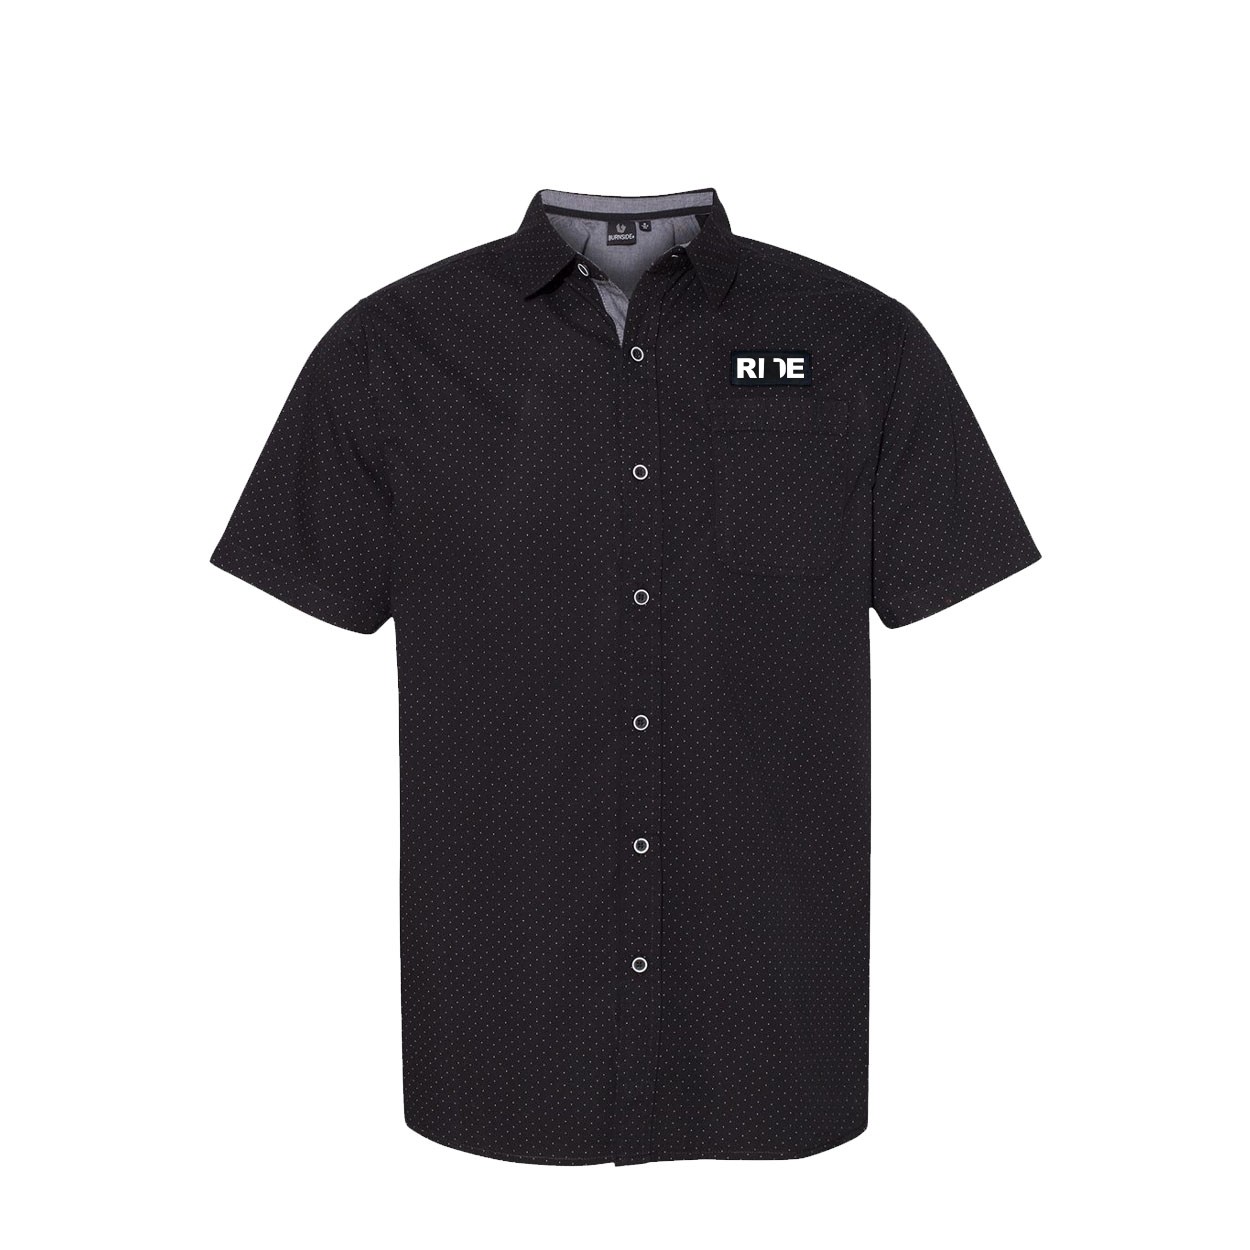 Ride Utah Classic Poplin Short Sleeve Woven Shirt Black/White Dot (White Logo)